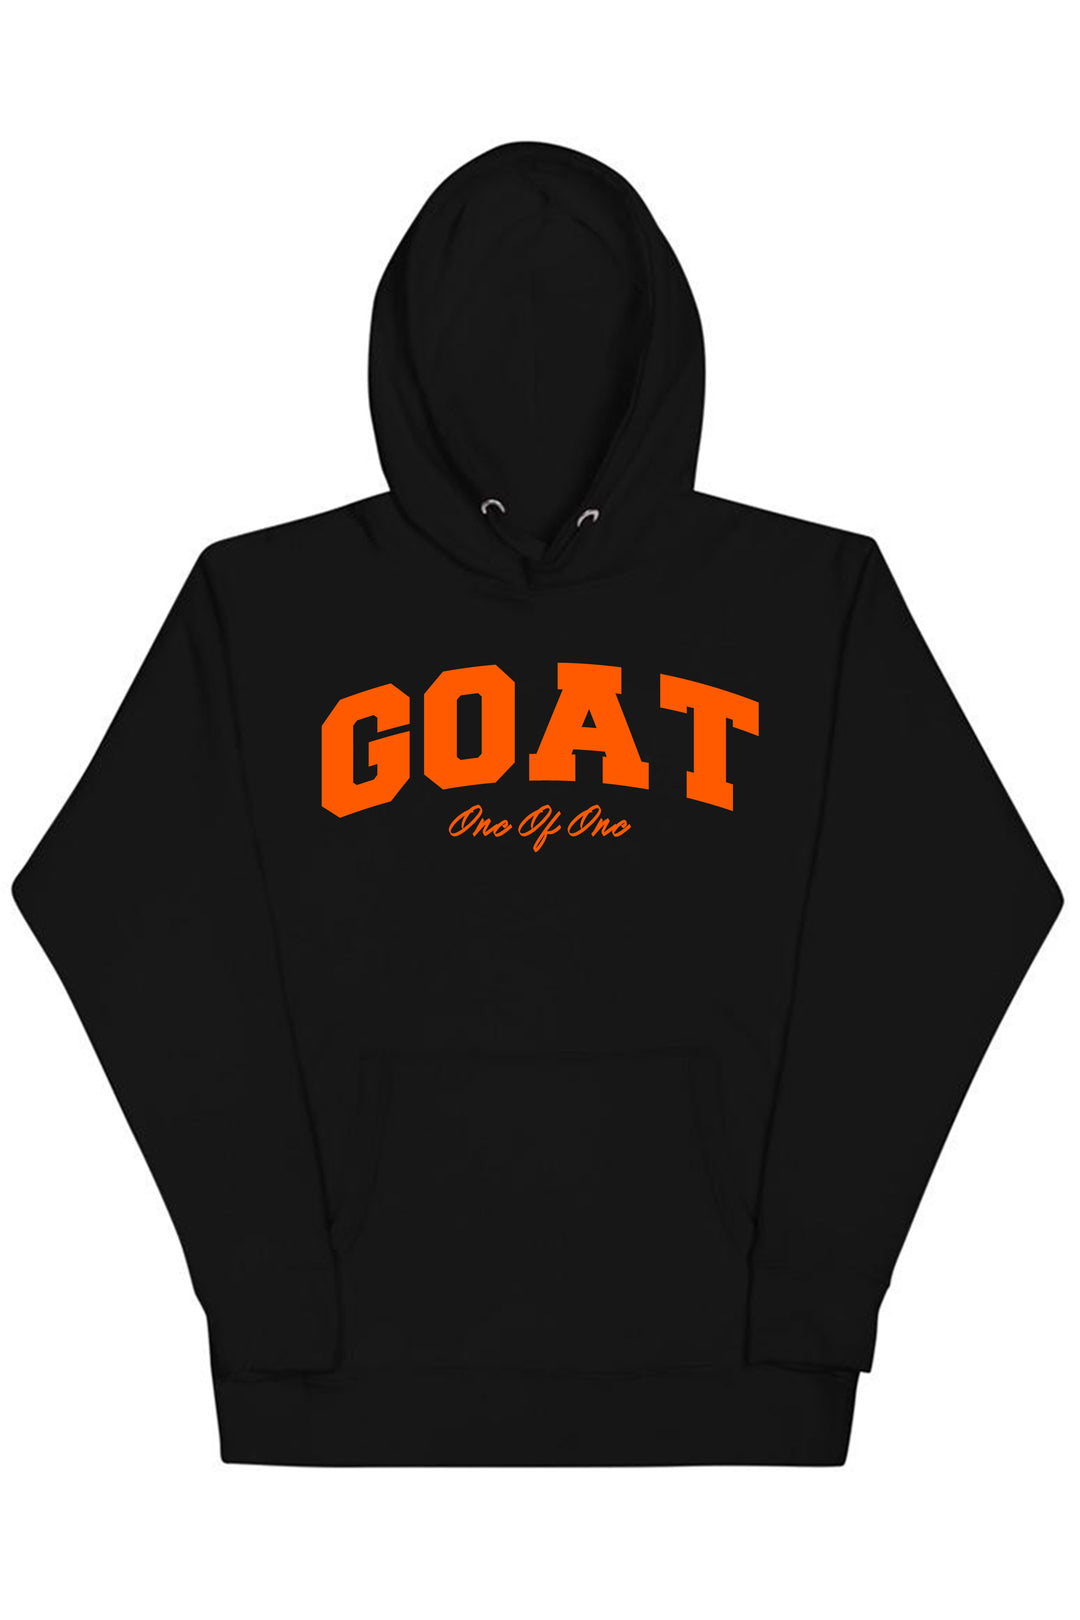 Goat Hoodie (Orange Logo) - Zamage